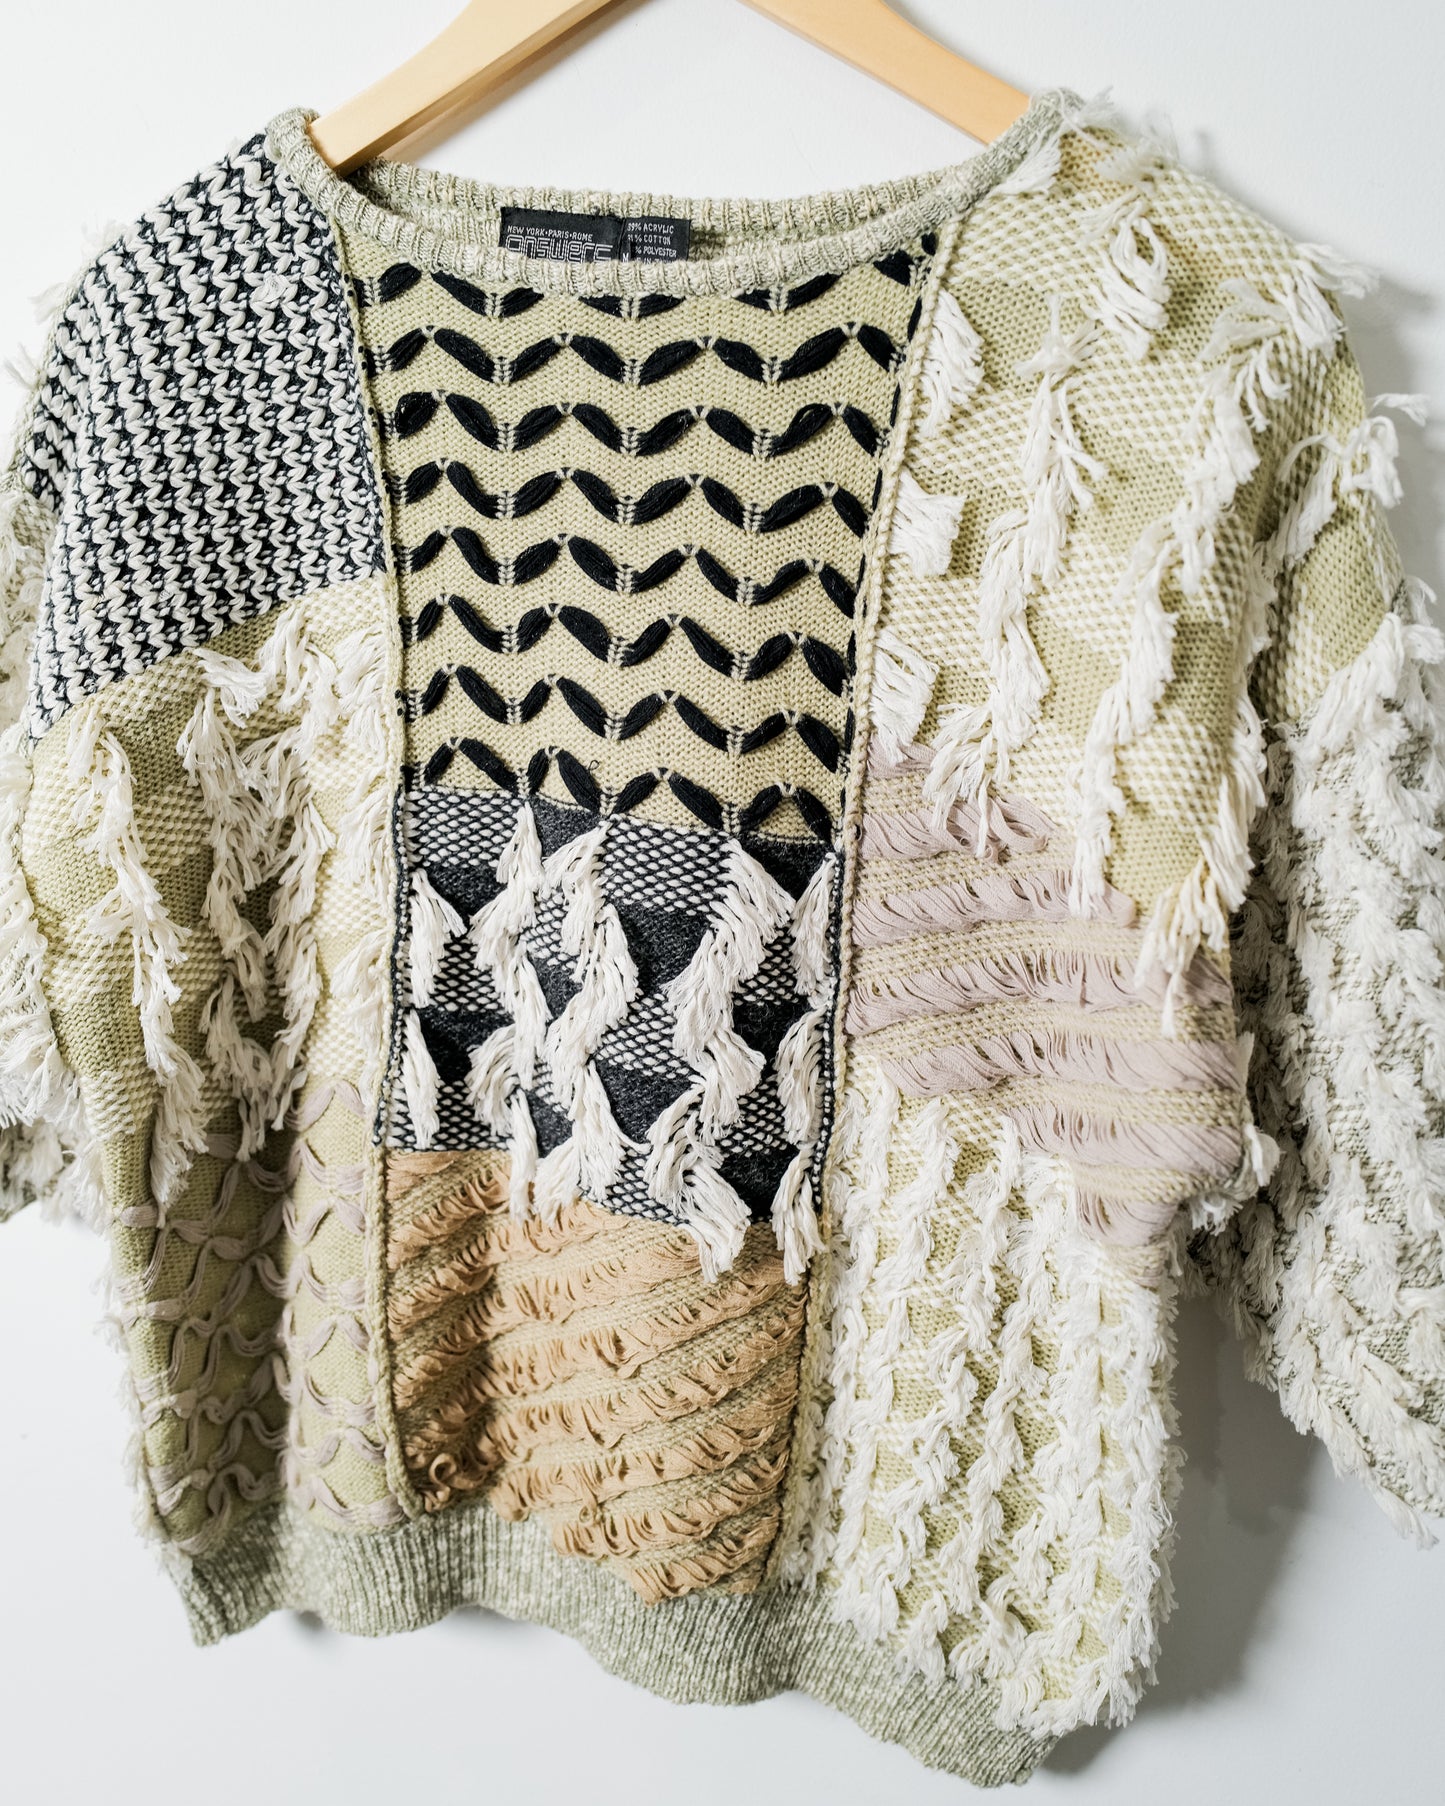 Vintage Fringe Sweater - Size Medium